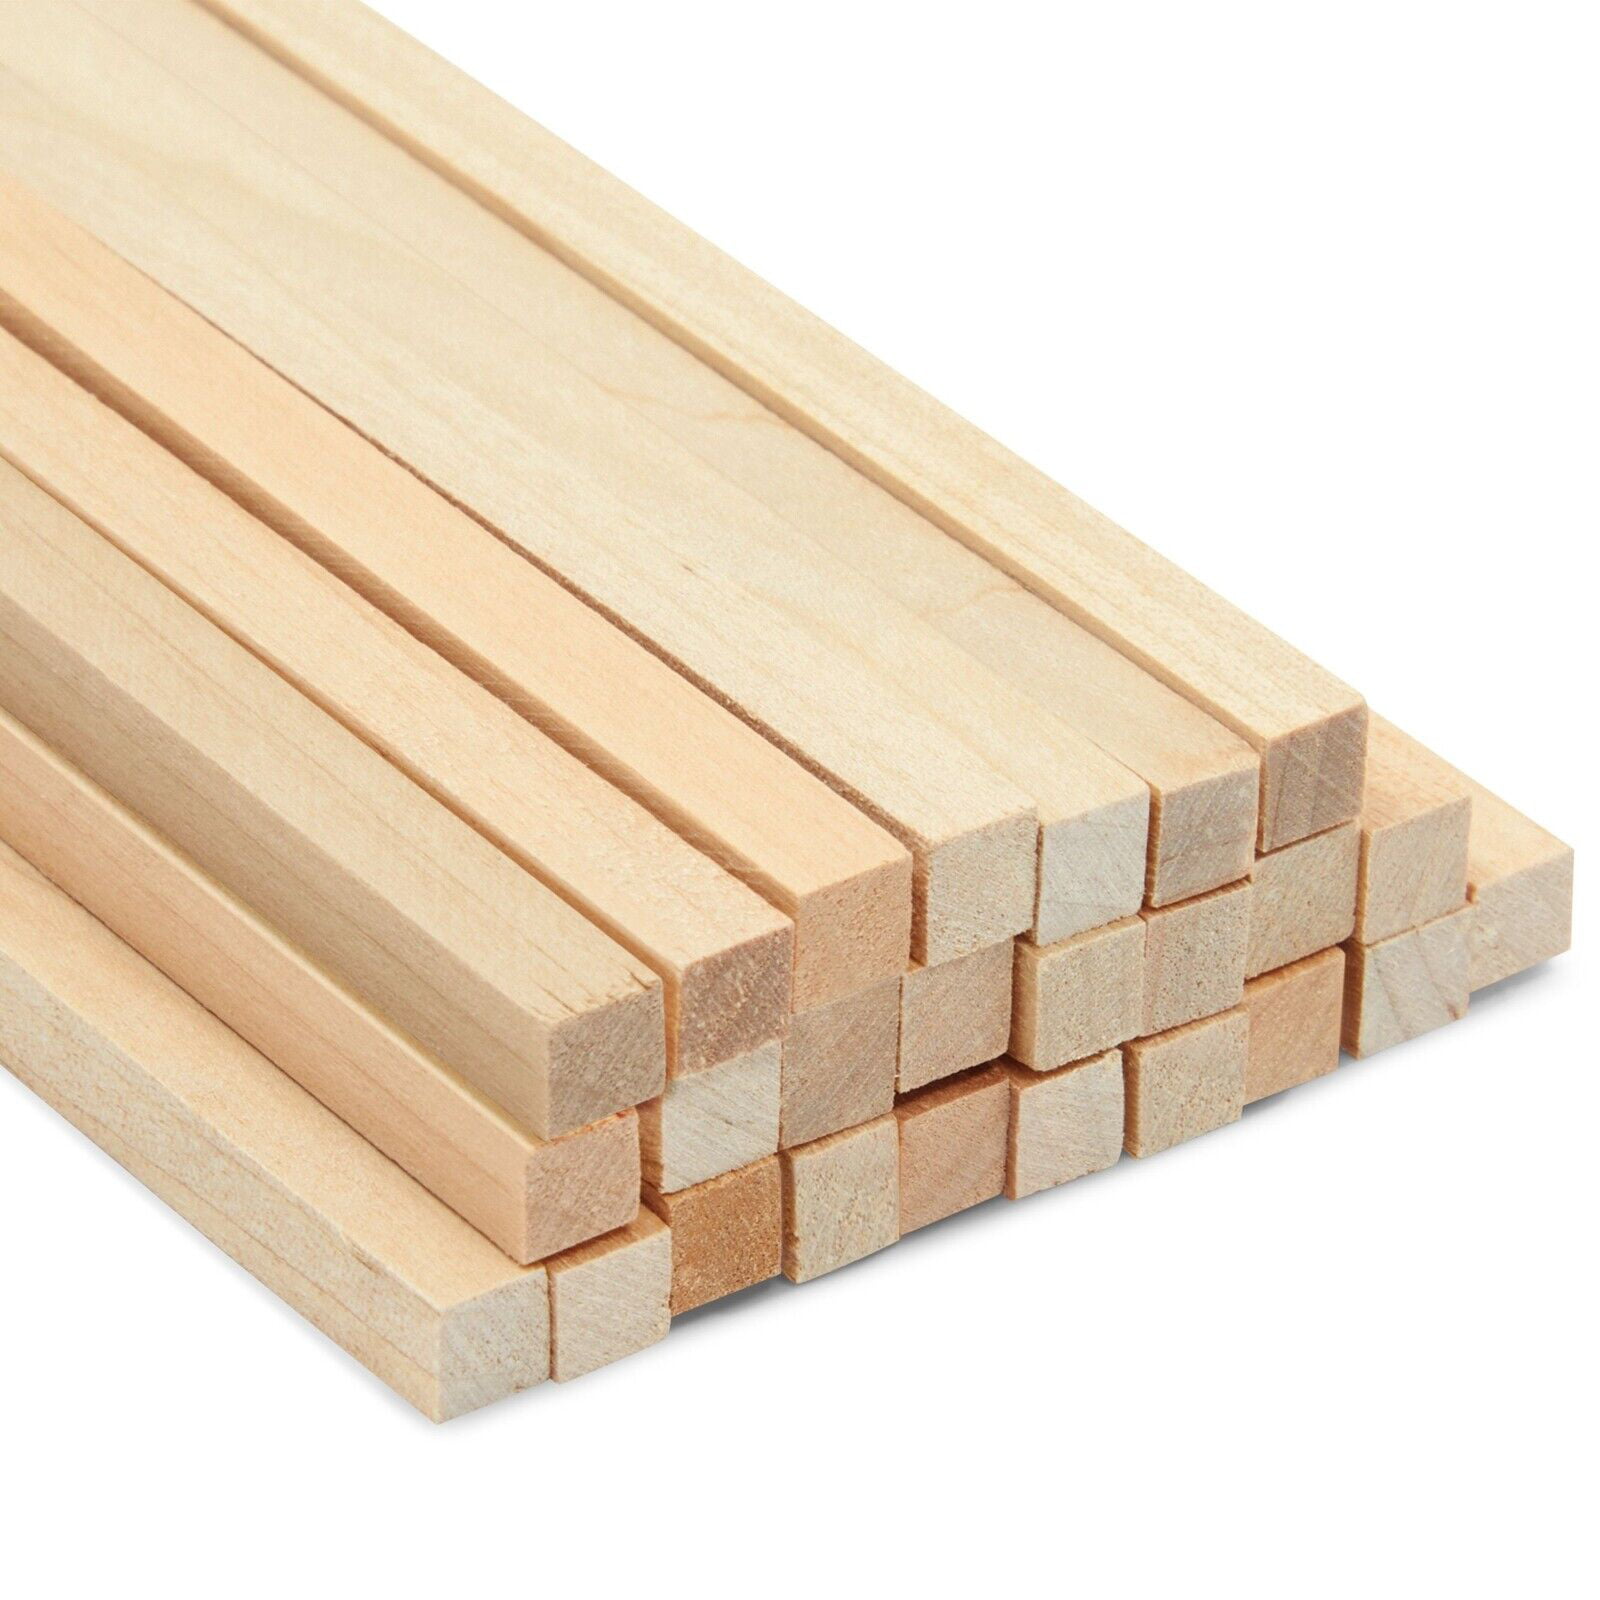 Bud Nosen Balsa Wood Sticks - 1/4 x 3/8 x 36, Pkg of 15